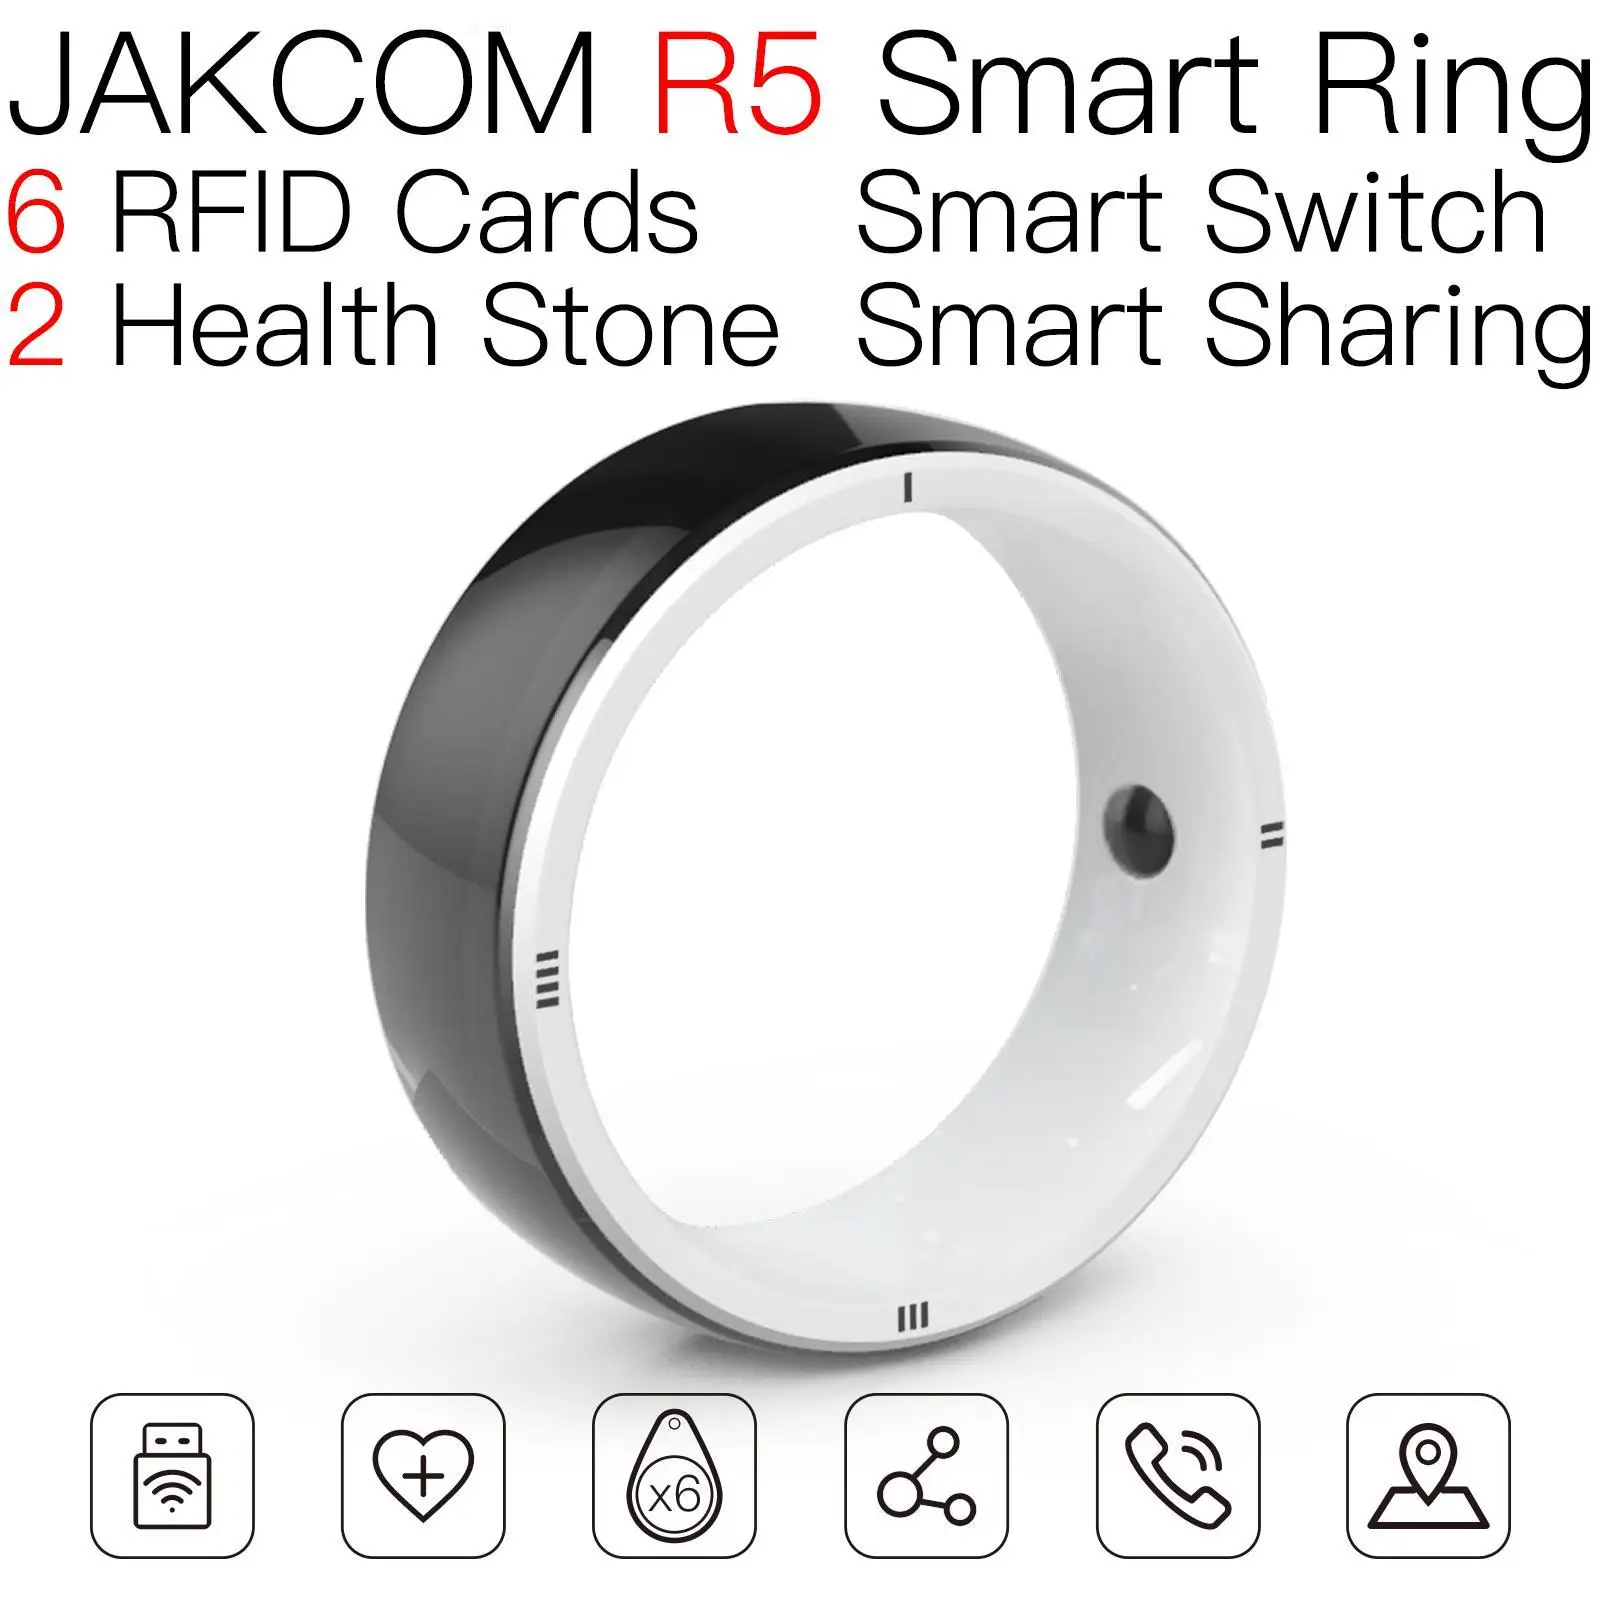 

Умное кольцо JAKCOM R5, лучший подарок с этикеткой uhf nfc, бесконтактная визитная карточка, бейдж, кафе carte amibo, новый horizon em морские rfid